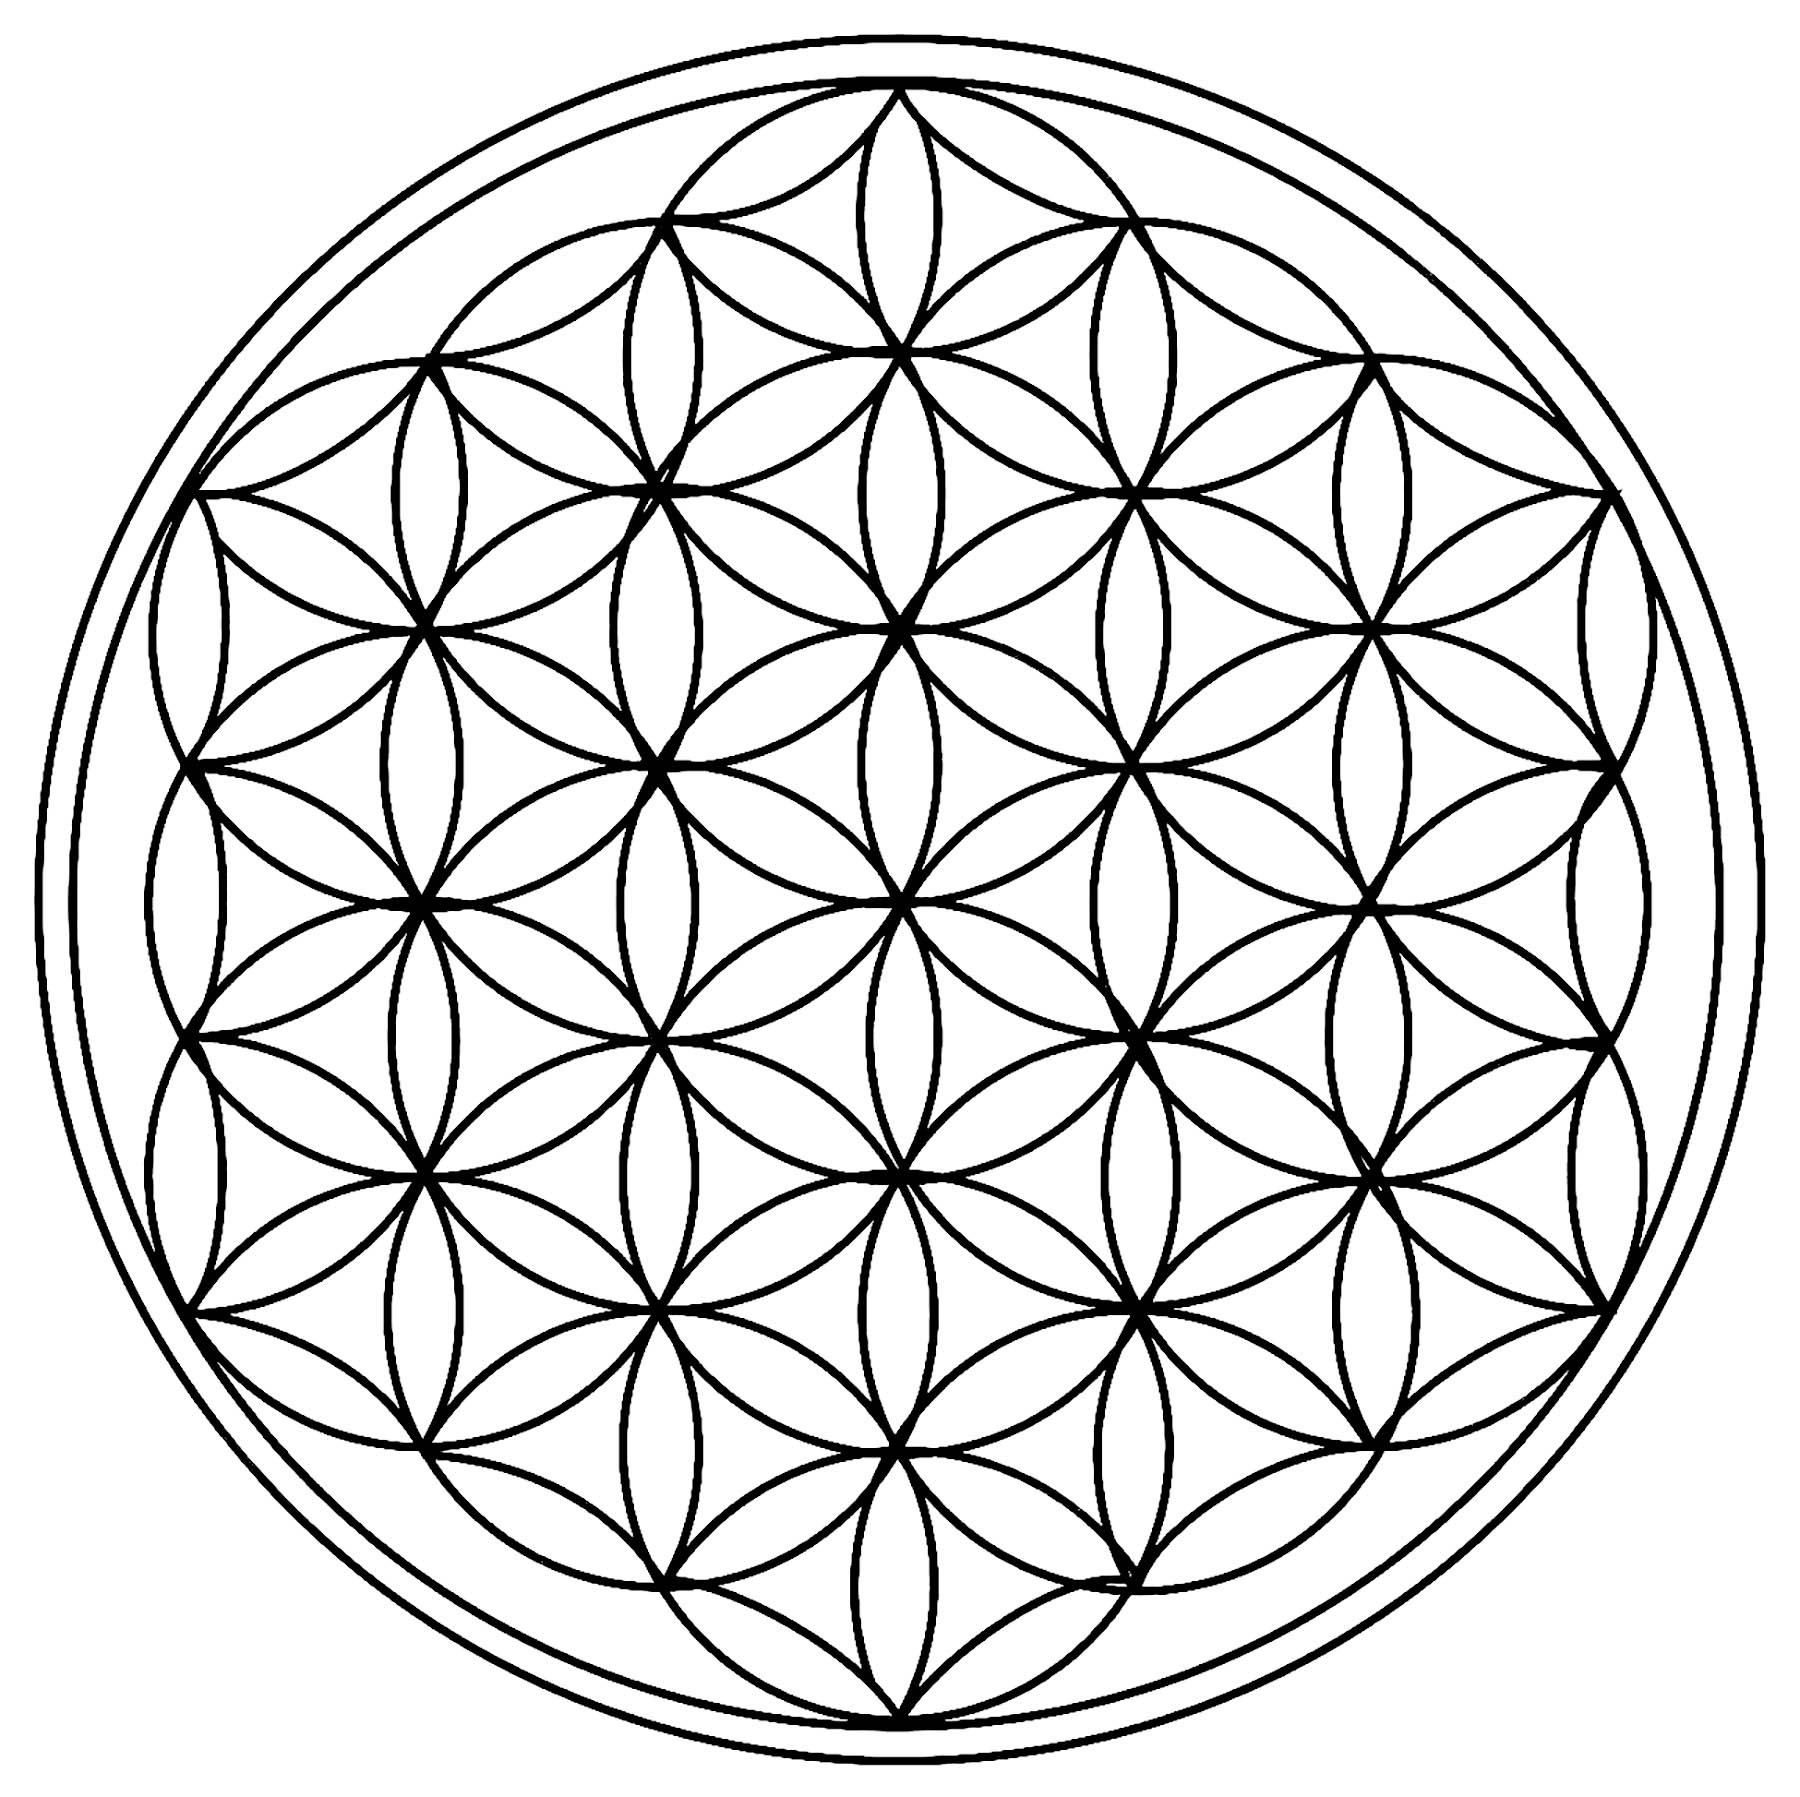 Il n'y a que des cercles dans ce Mandala ! Et oui regardez bien